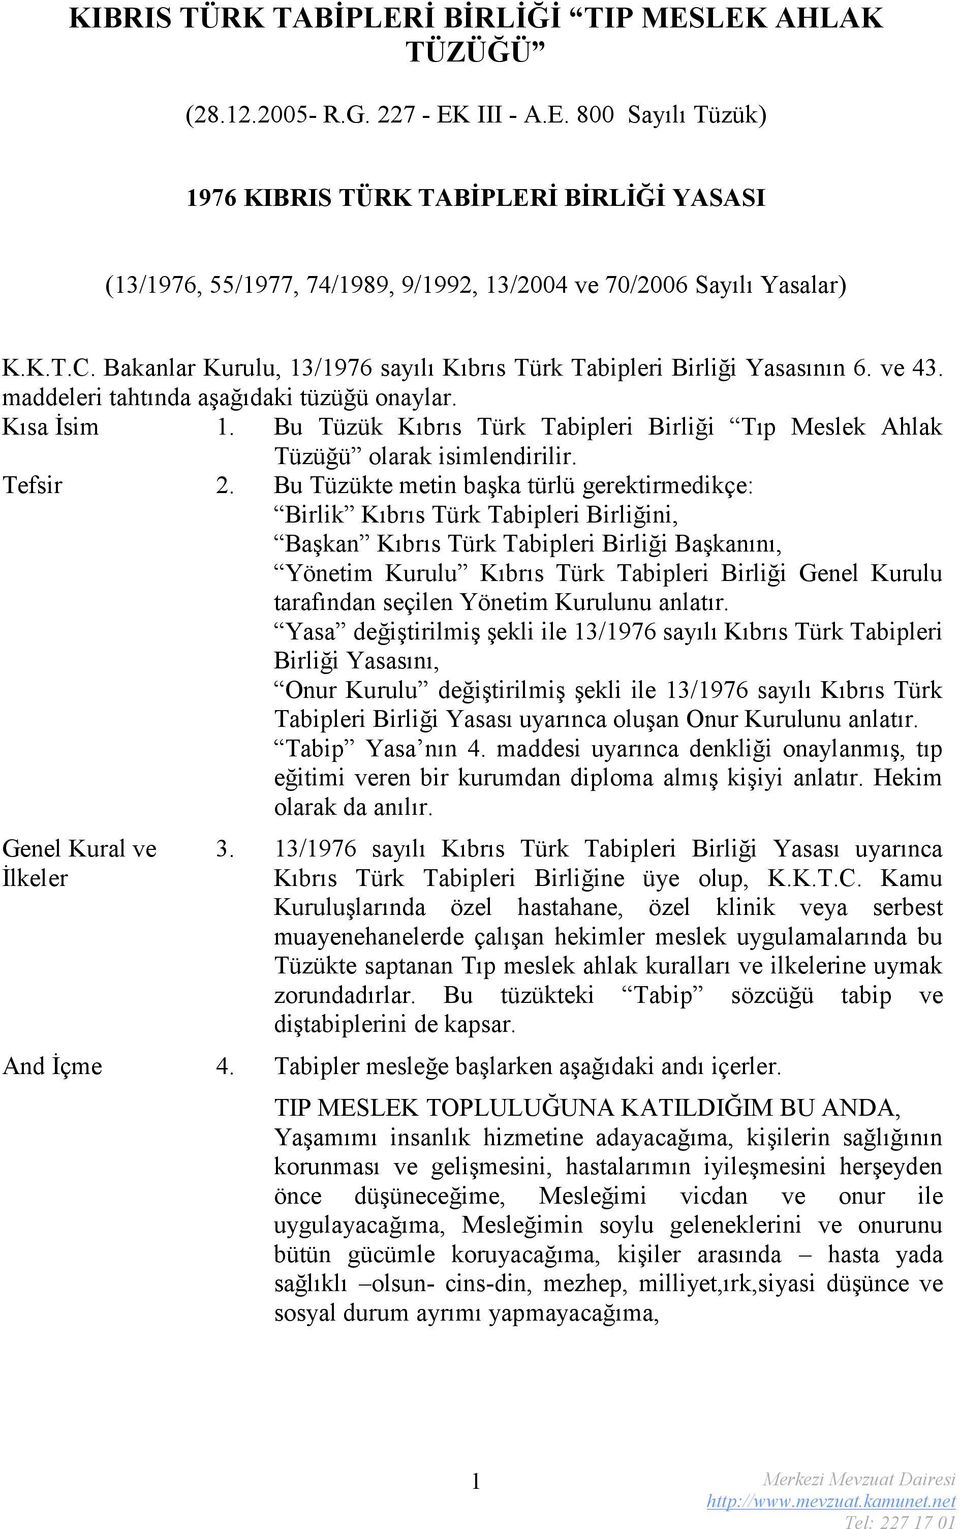 Bu Tüzük Kıbrıs Türk Tabipleri Birliği Tıp Meslek Ahlak Tüzüğü olarak isimlendirilir. Tefsir 2.